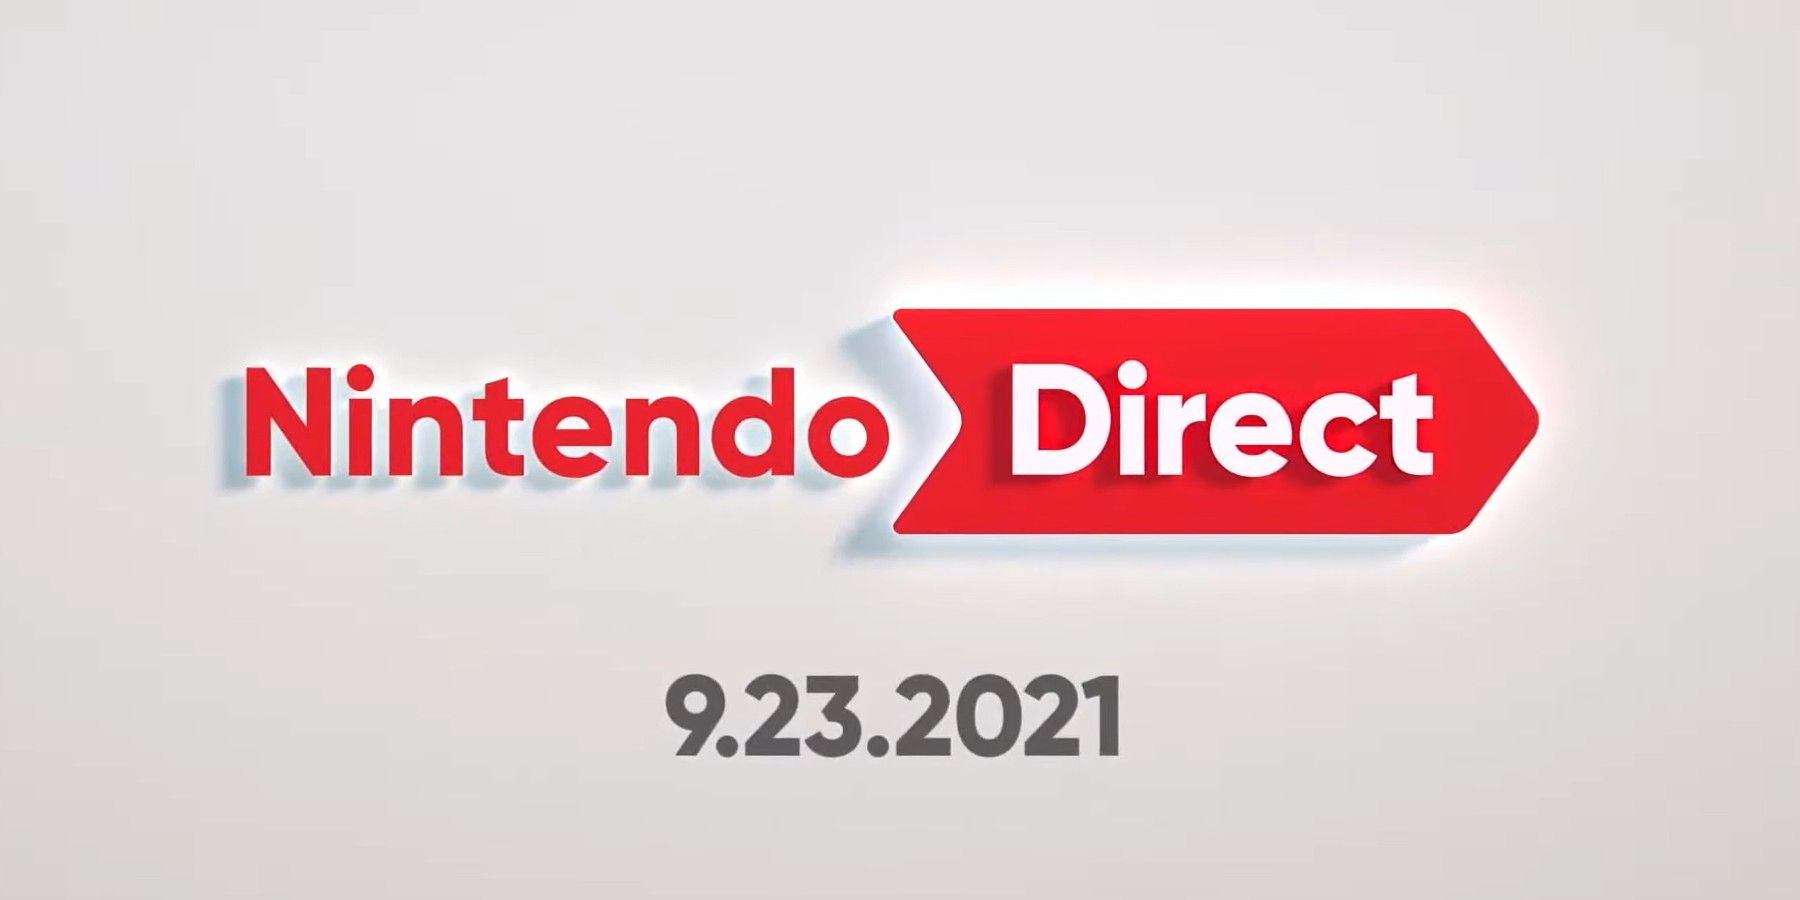 지금까지 2021 년의 모든 Nintendo Direct 이벤트